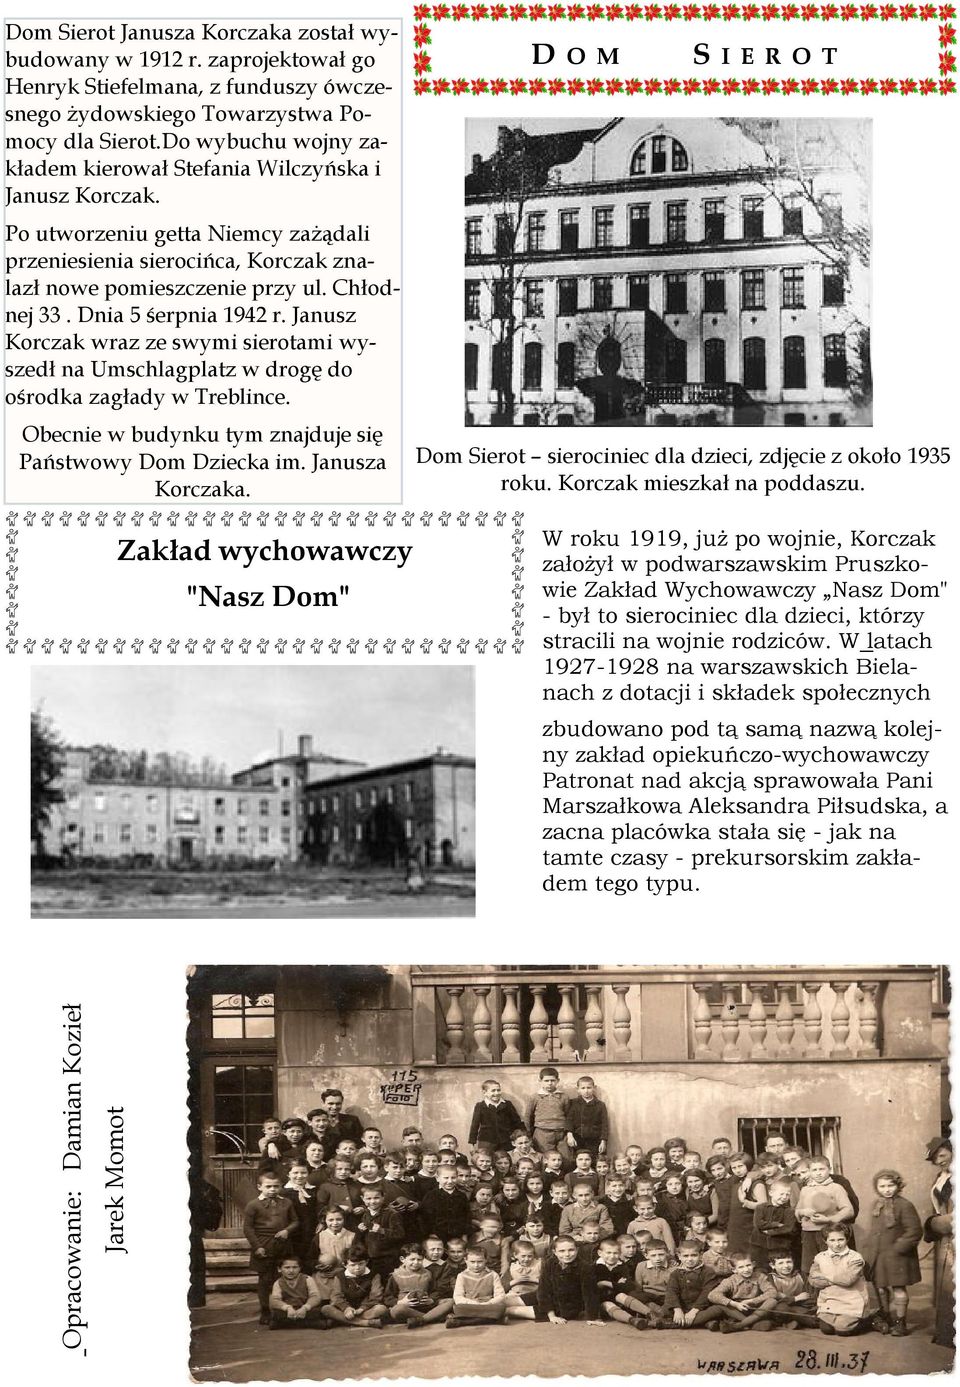 Dnia 5 śerpnia 1942 r. Janusz Korczak wraz ze swymi sierotami wyszedł na Umschlagplatz w drogę do ośrodka zagłady w Treblince. Obecnie w budynku tym znajduje się Państwowy Dom Dziecka im.